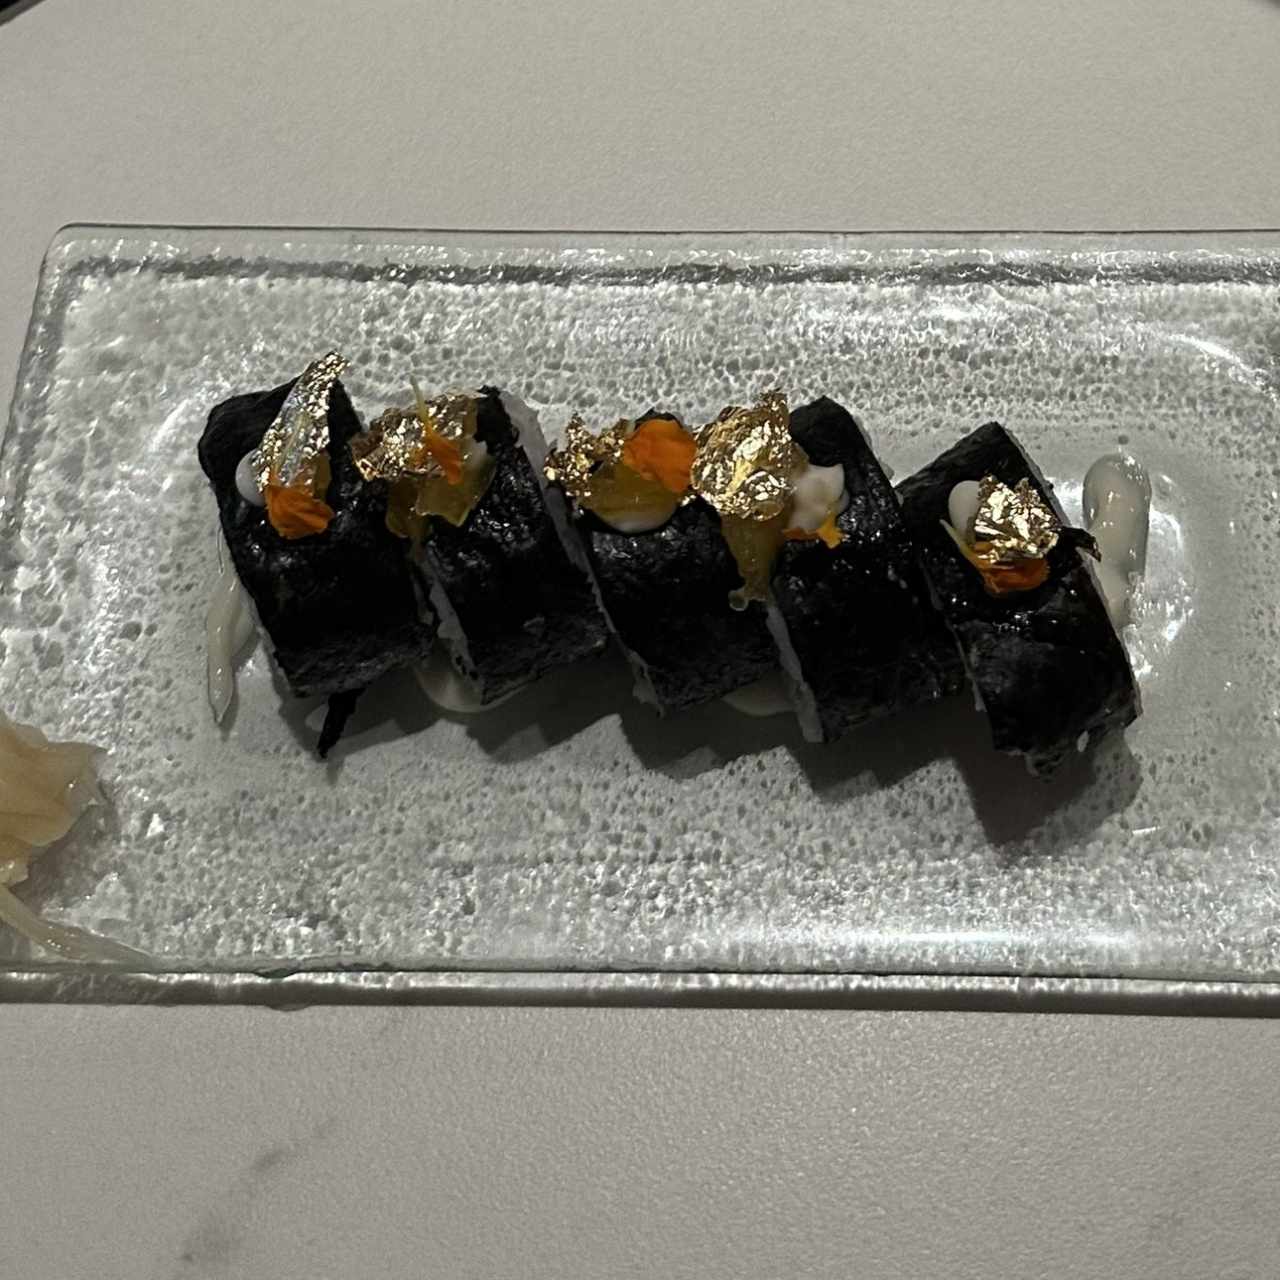 Sushi - Hosomaki Salmón Trufado